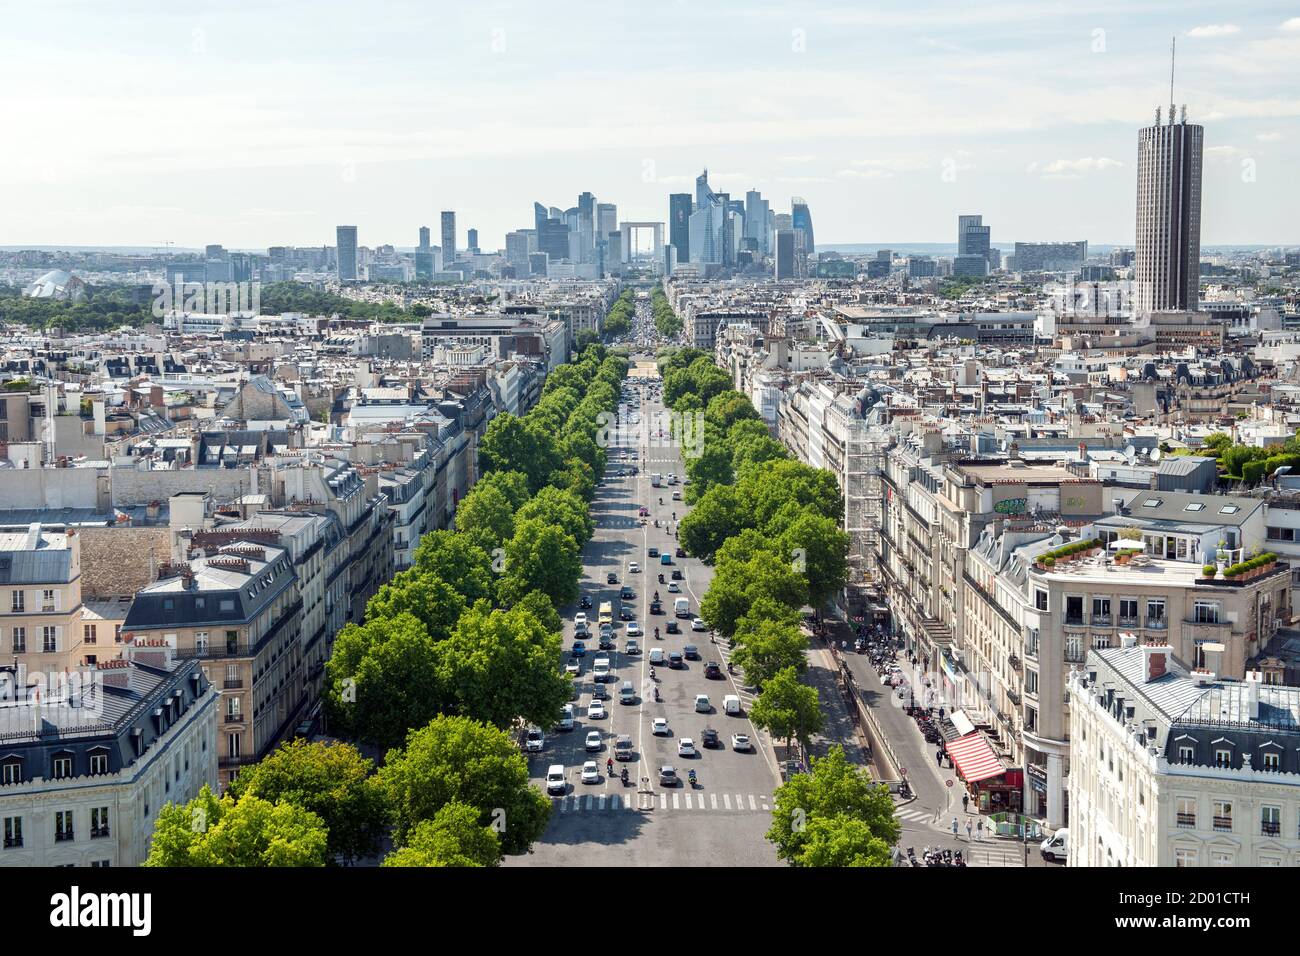 Vue depuis le sommet de l'Arc de Triomphe sur l'avenue de la Grande Armée en direction de la Grande Arche de la Défense à Paris. Banque D'Images